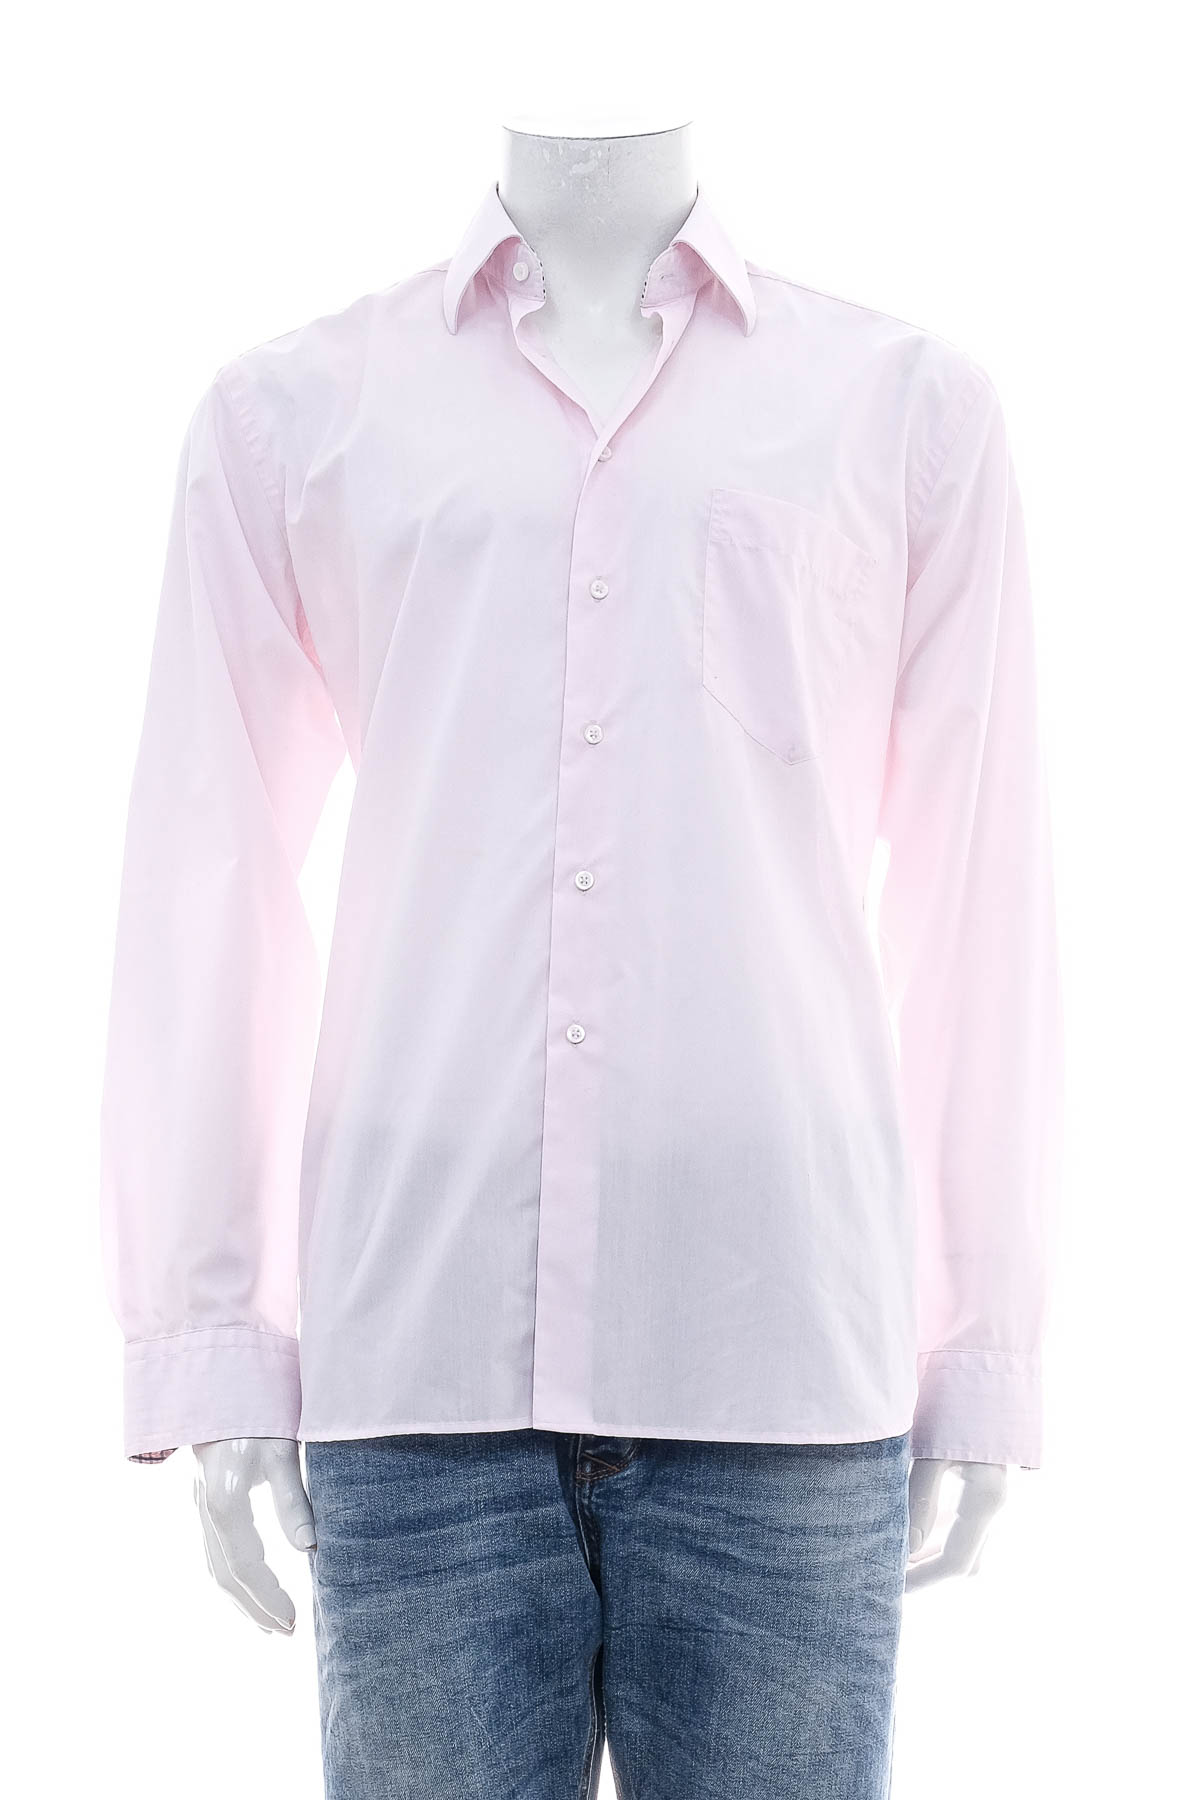 Ανδρικό πουκάμισο - McNeal - 0